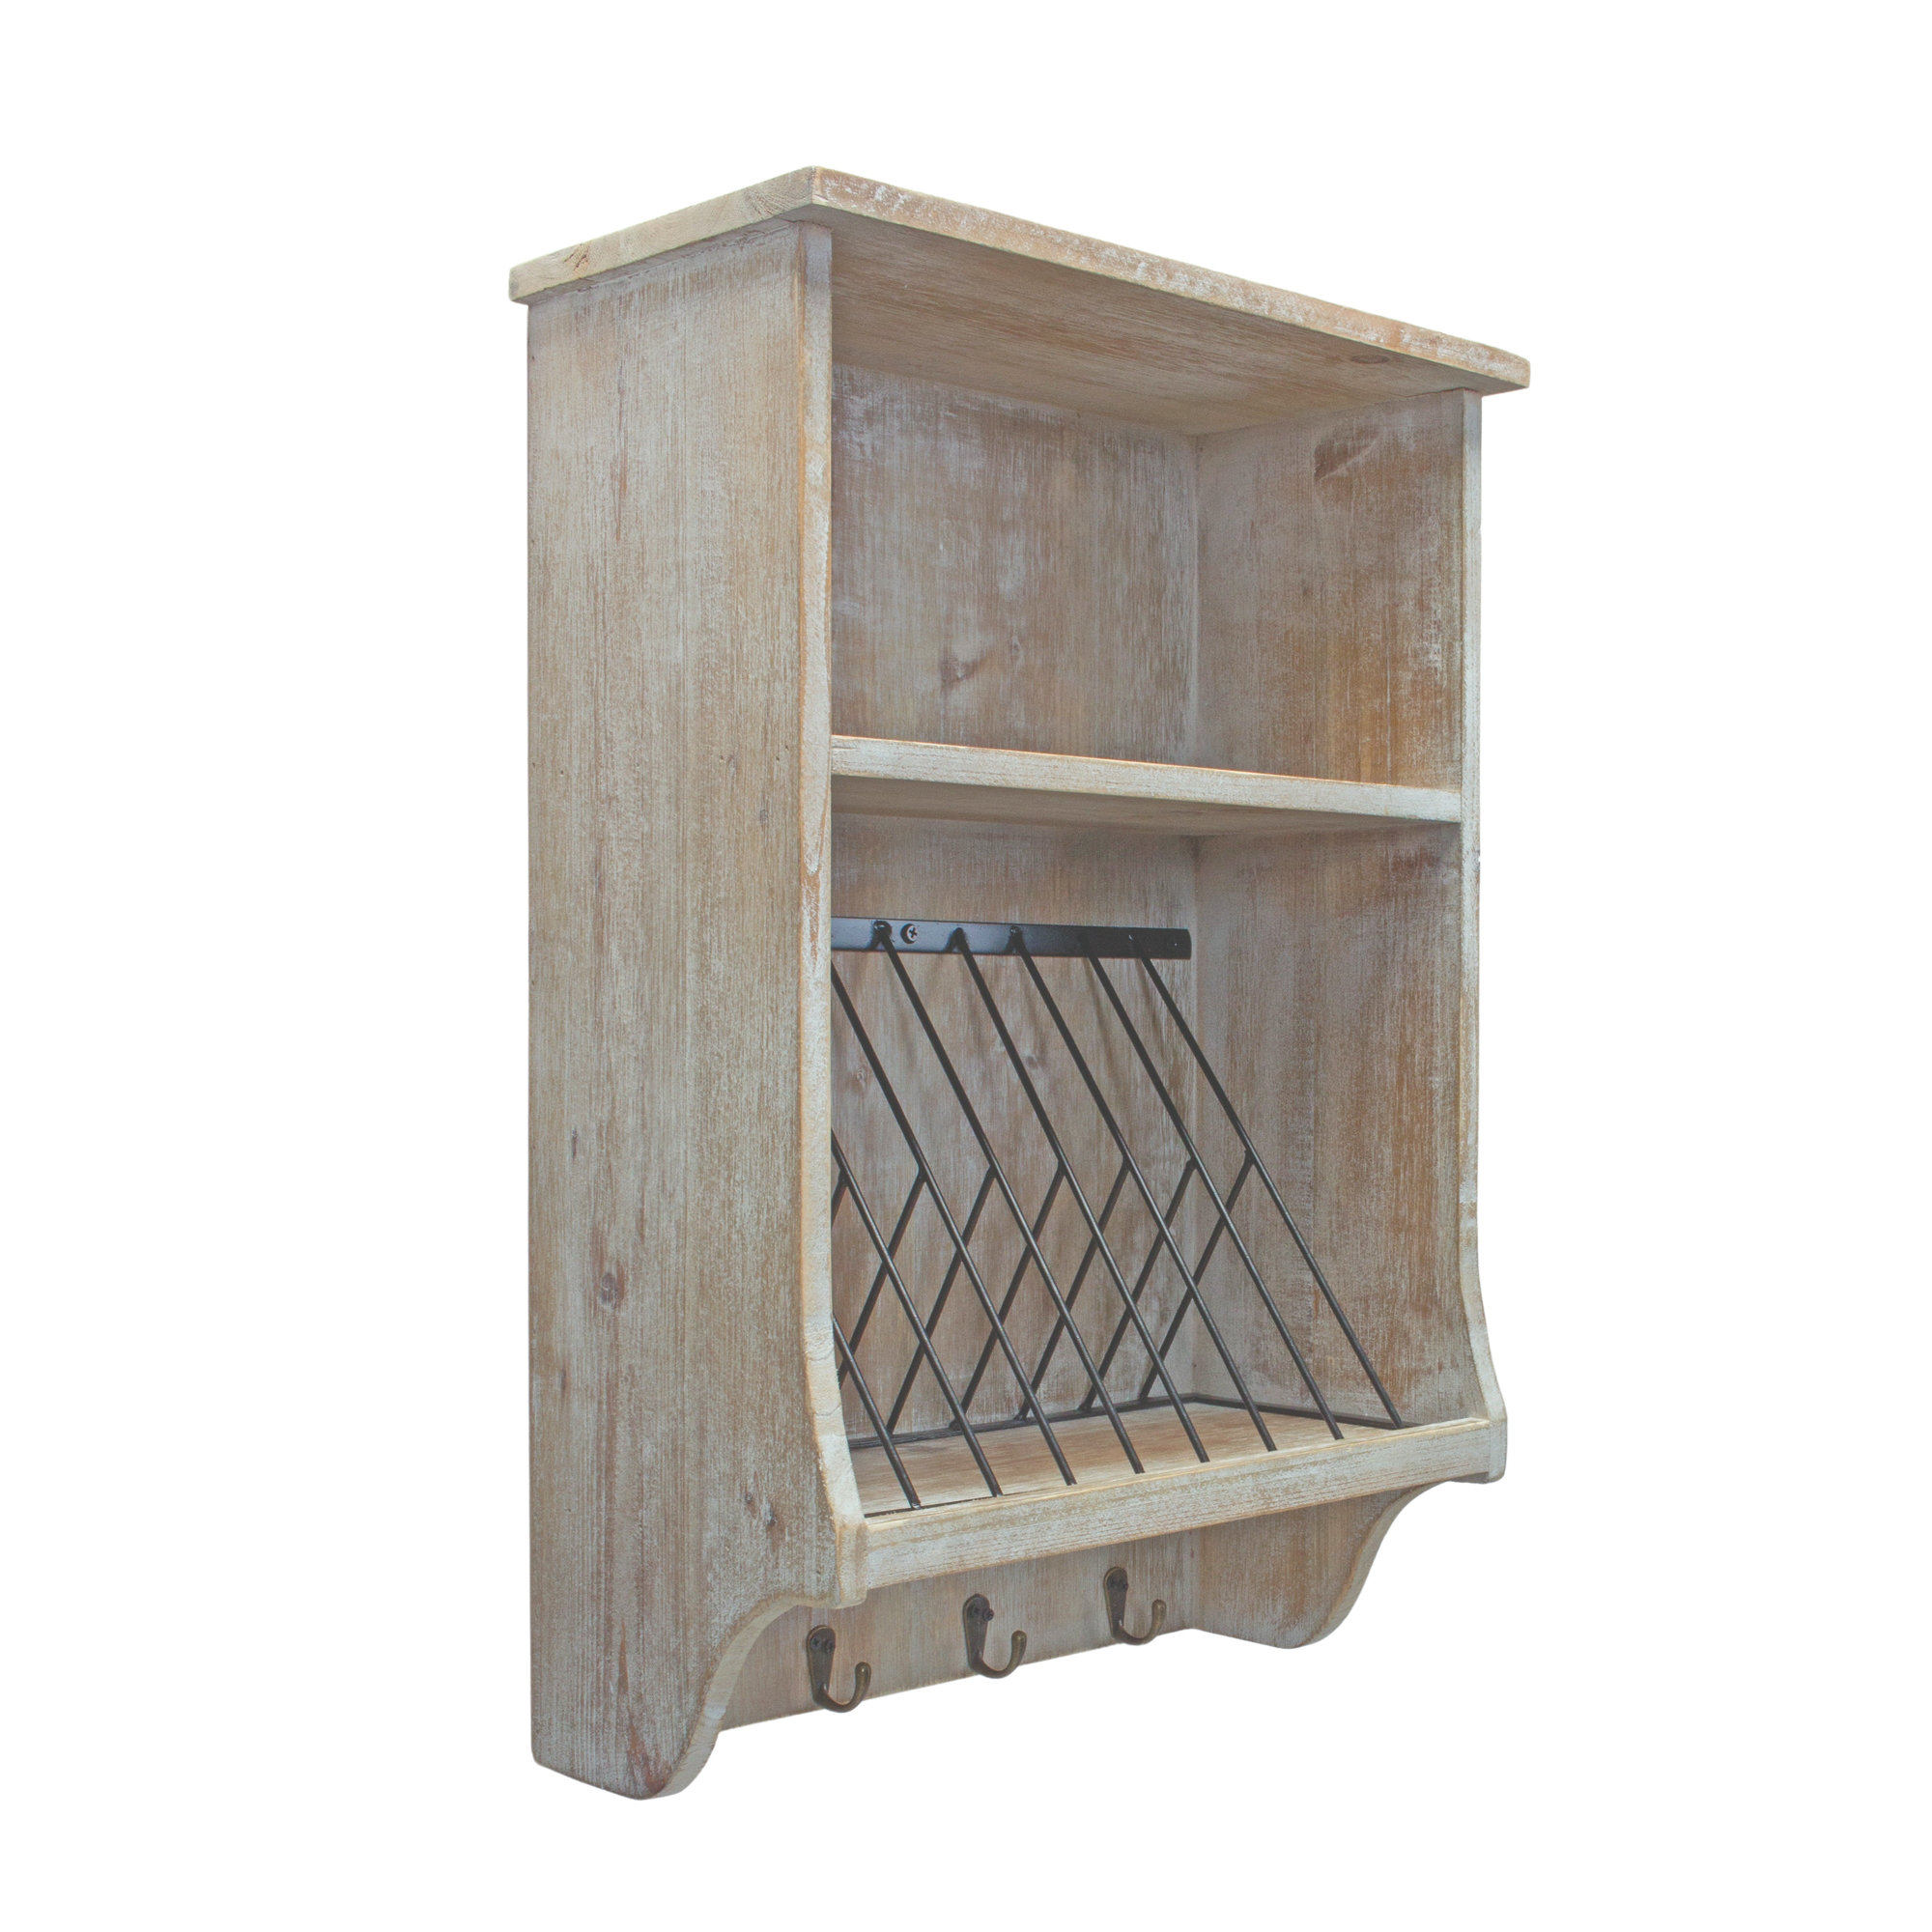 Rosalind Wheeler 2 Piece Wood Accent Shelf